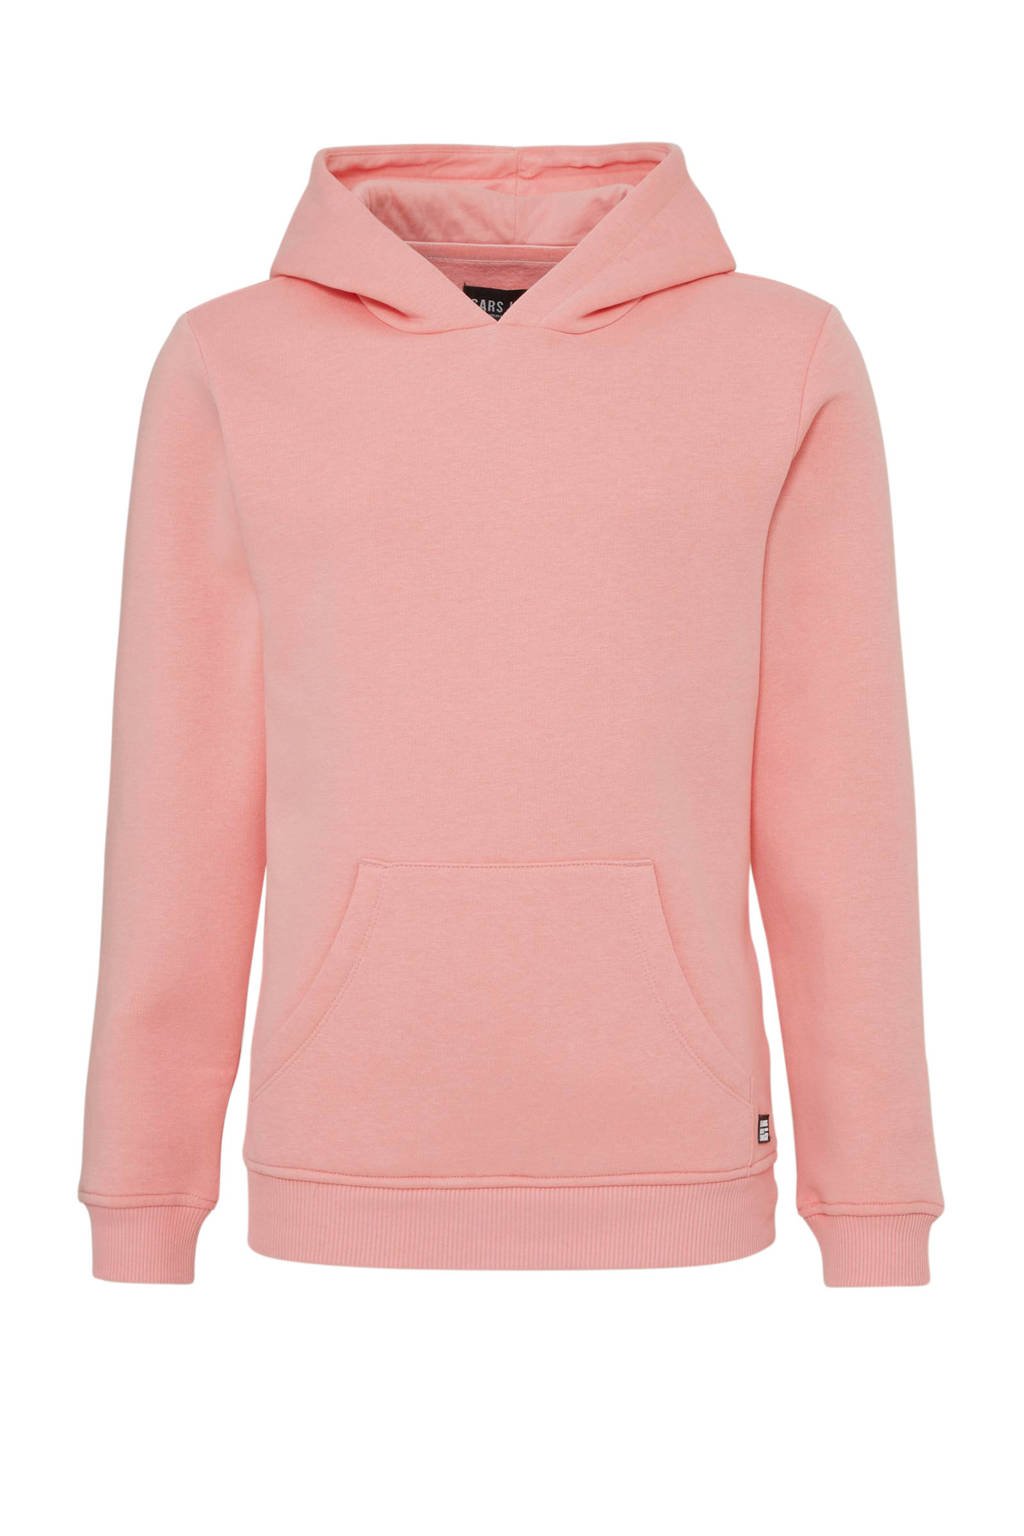 Roze jongens en meisjes Cars unisex hoodie Kimar van sweat materiaal met lange mouwen en capuchon